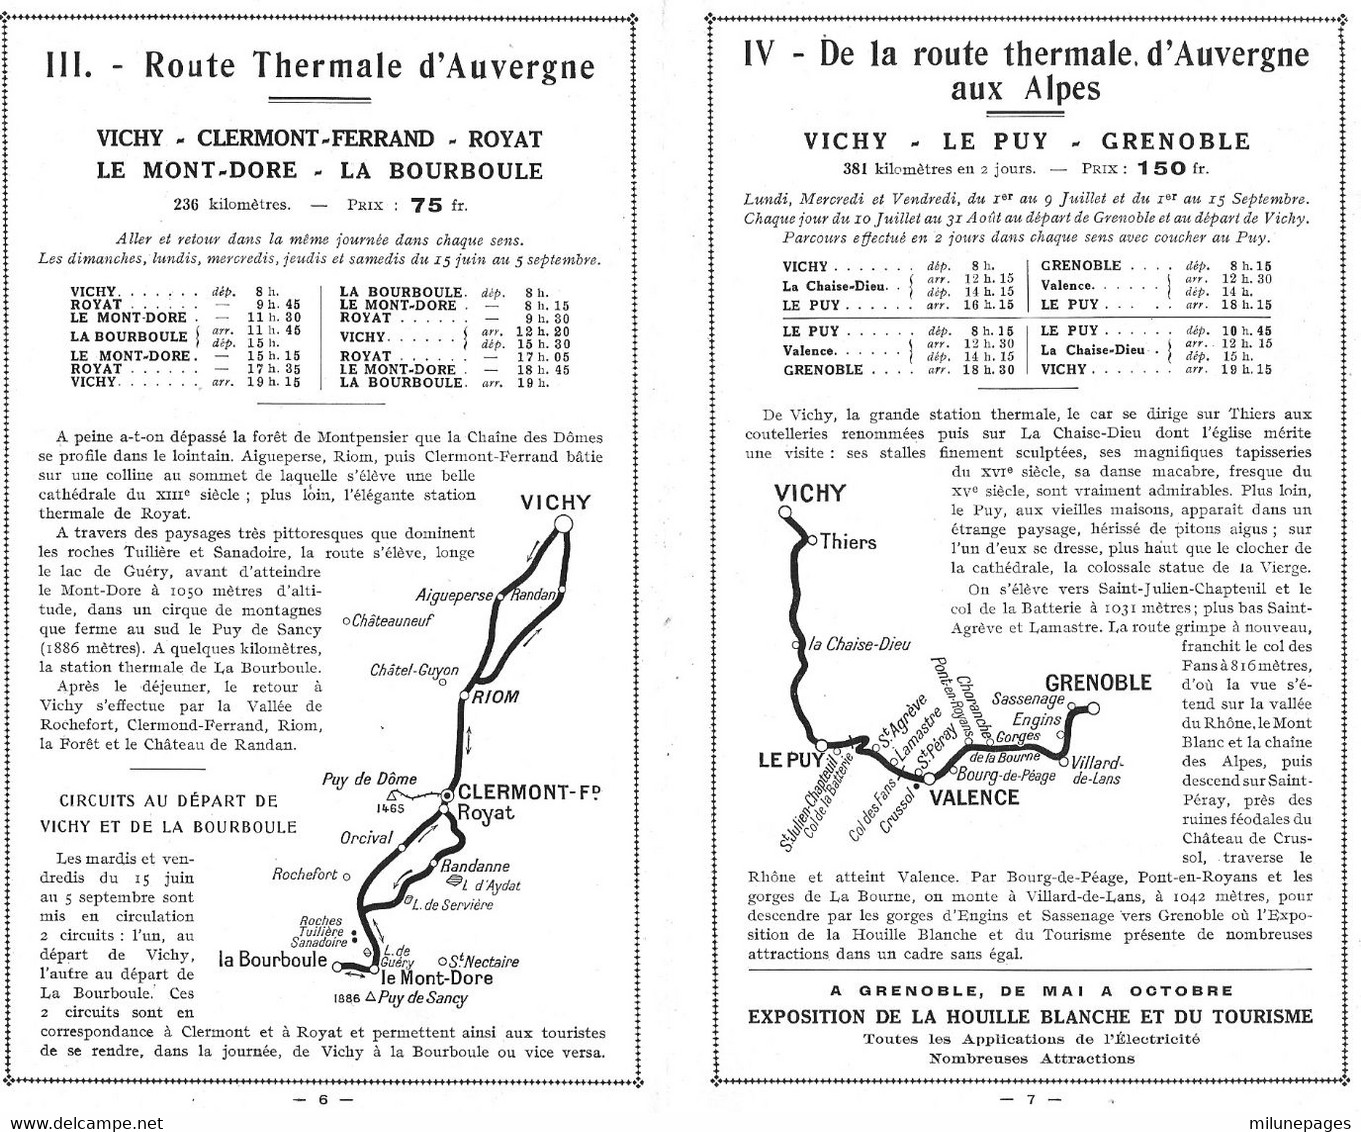 Superbe Dépliant Touristique Dépliable Des Services Automobiles PLM Vichy Route Thermale été 1925 - Auvergne